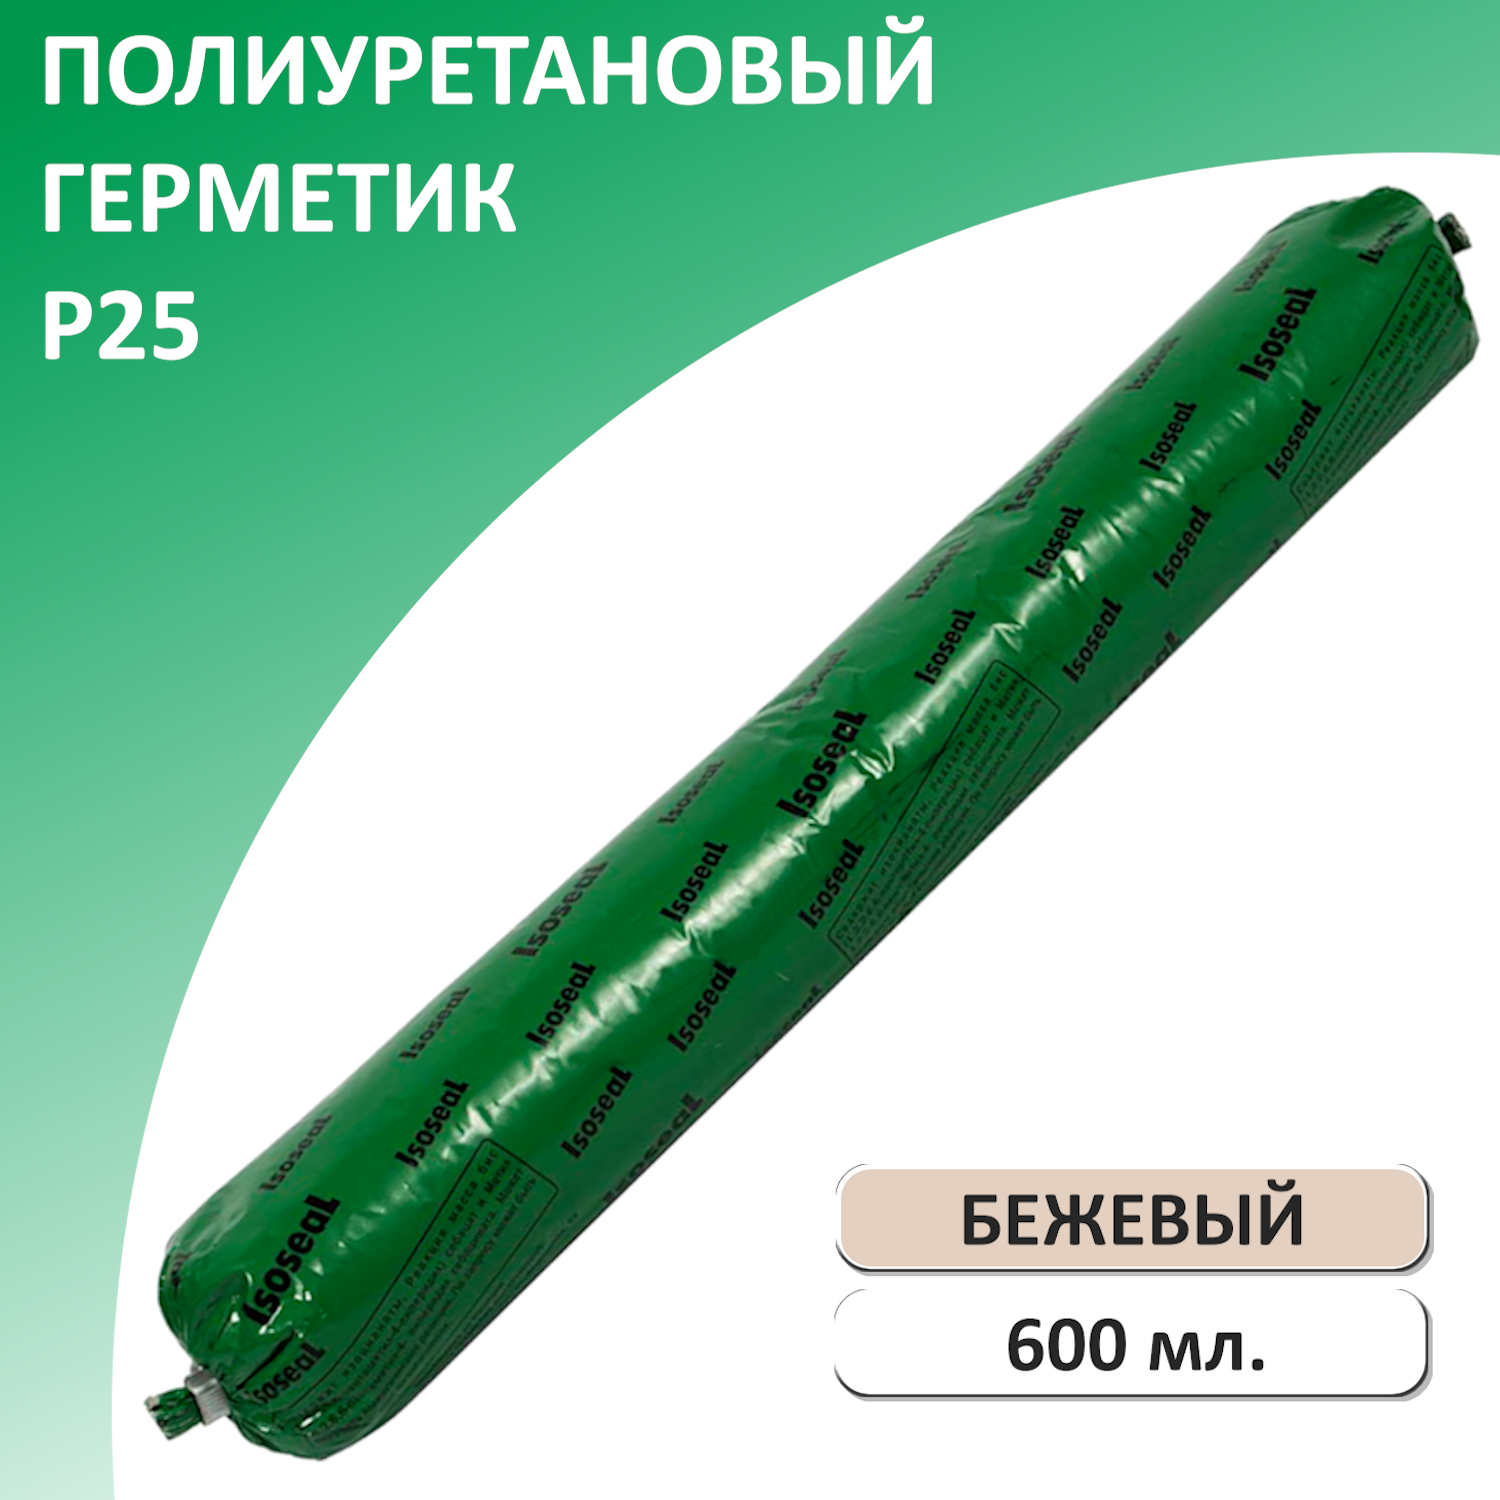 Герметик полиуретановый ISOSEAL P25, бежевый, 600 мл полиуретановый высокомодульный герметик sanz